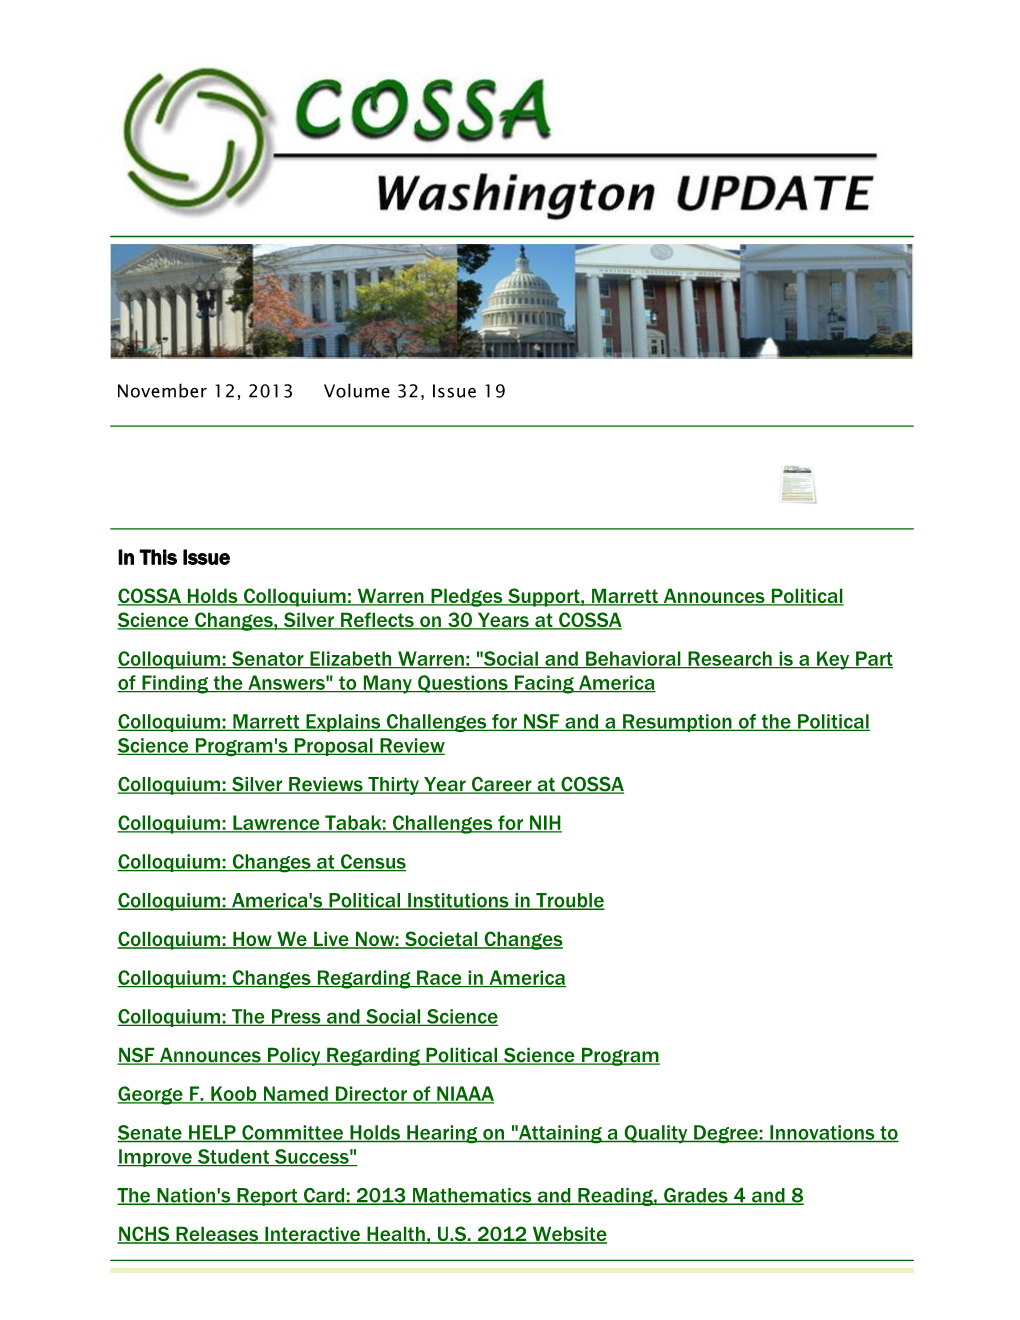 In This Issue COSSA Holds Colloquium: Warren Pledges